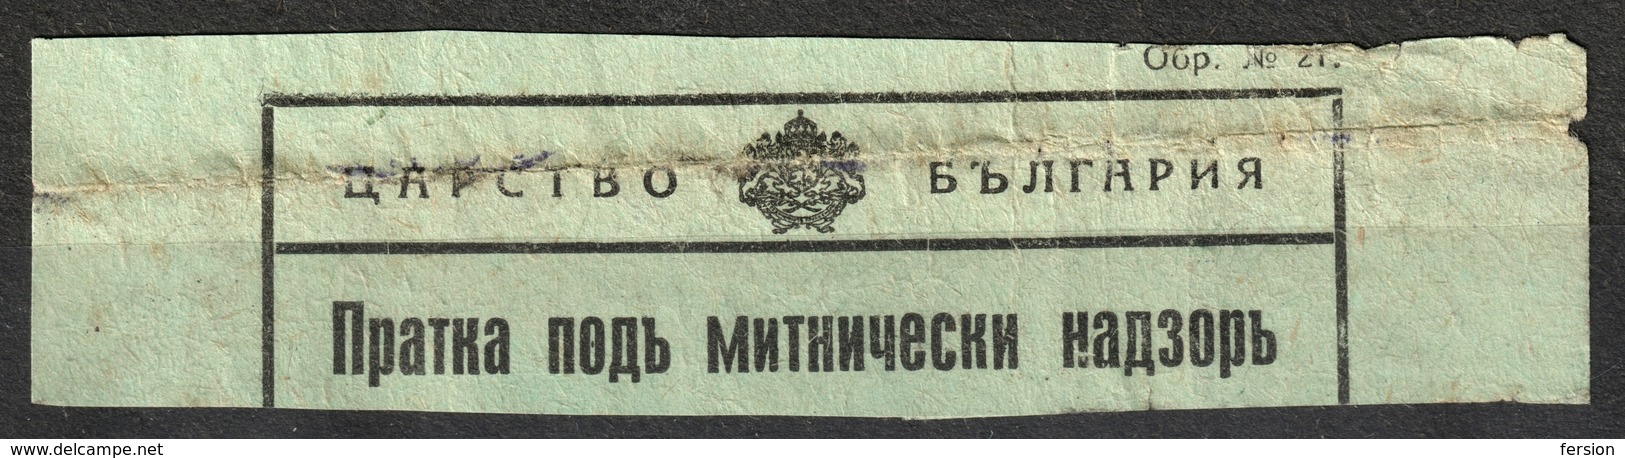 BULGARIA 1930's - Railway Customs Declaration - DÉCLARATION EN DOUANE / LABEL VIGNETTE - Used - Timbres De Service